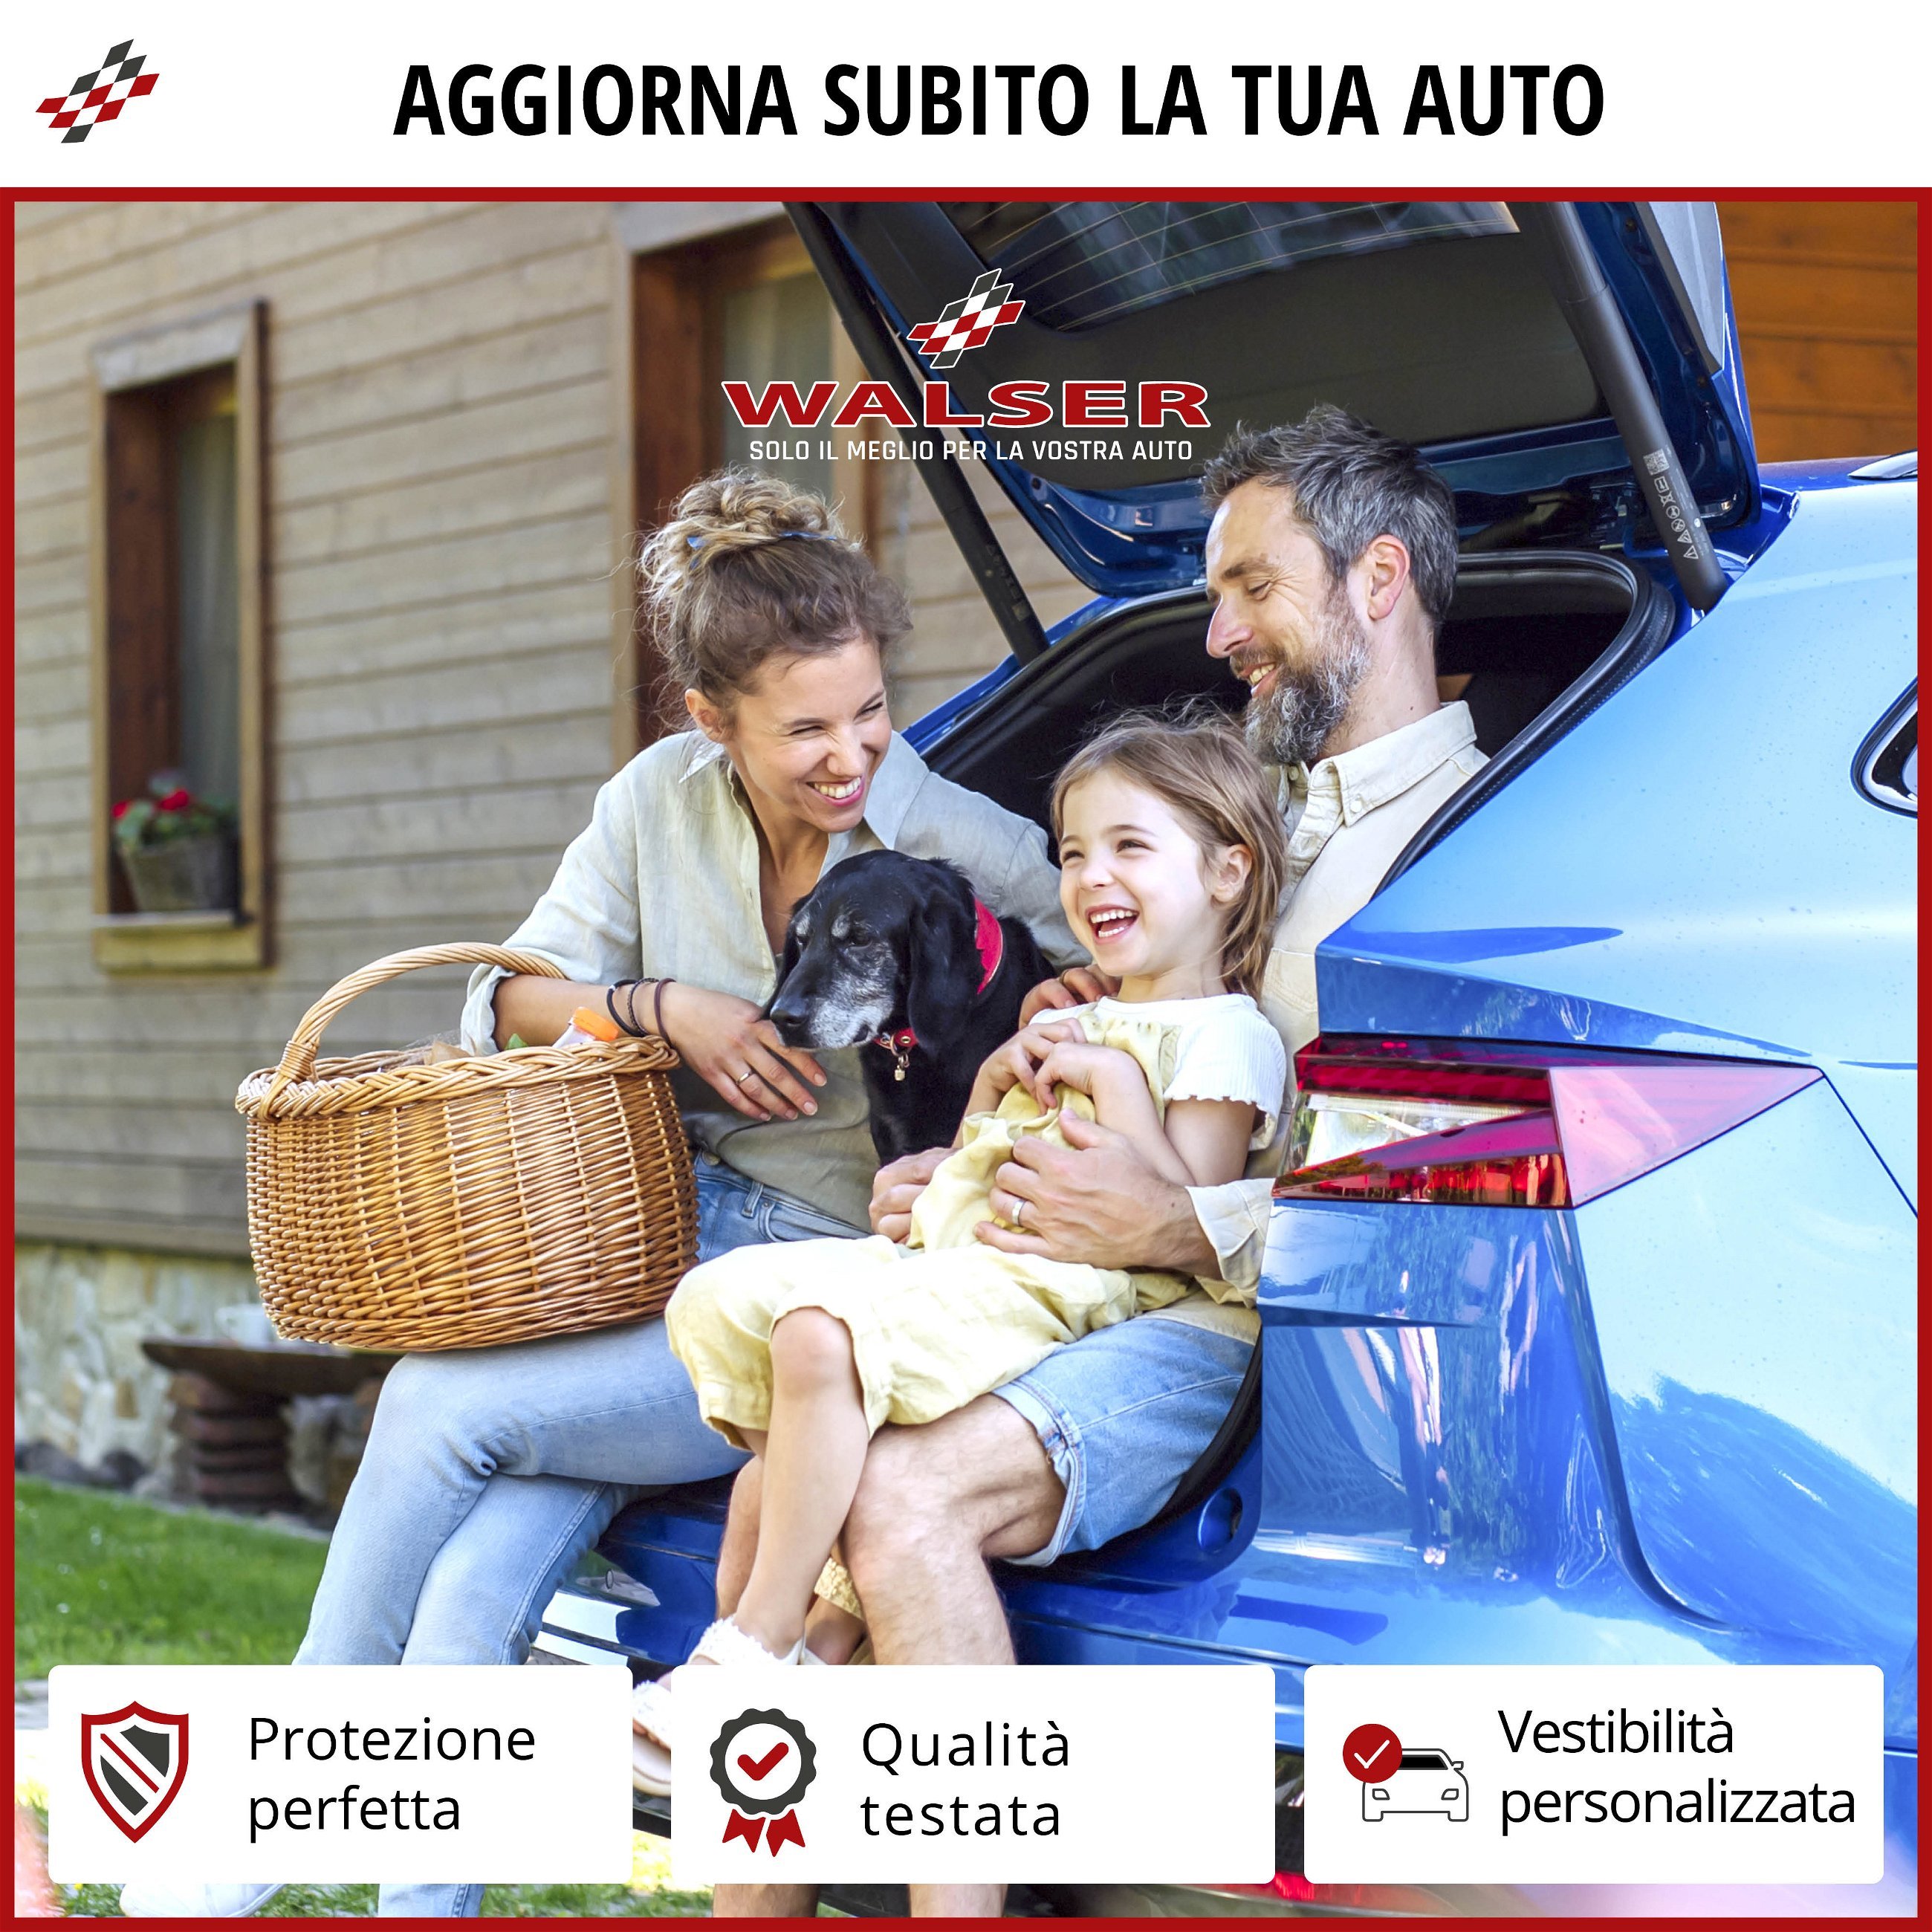 Protezione per paraurti Proguard per Ford Mondeo V Turnier (CF) 09/2014-2019